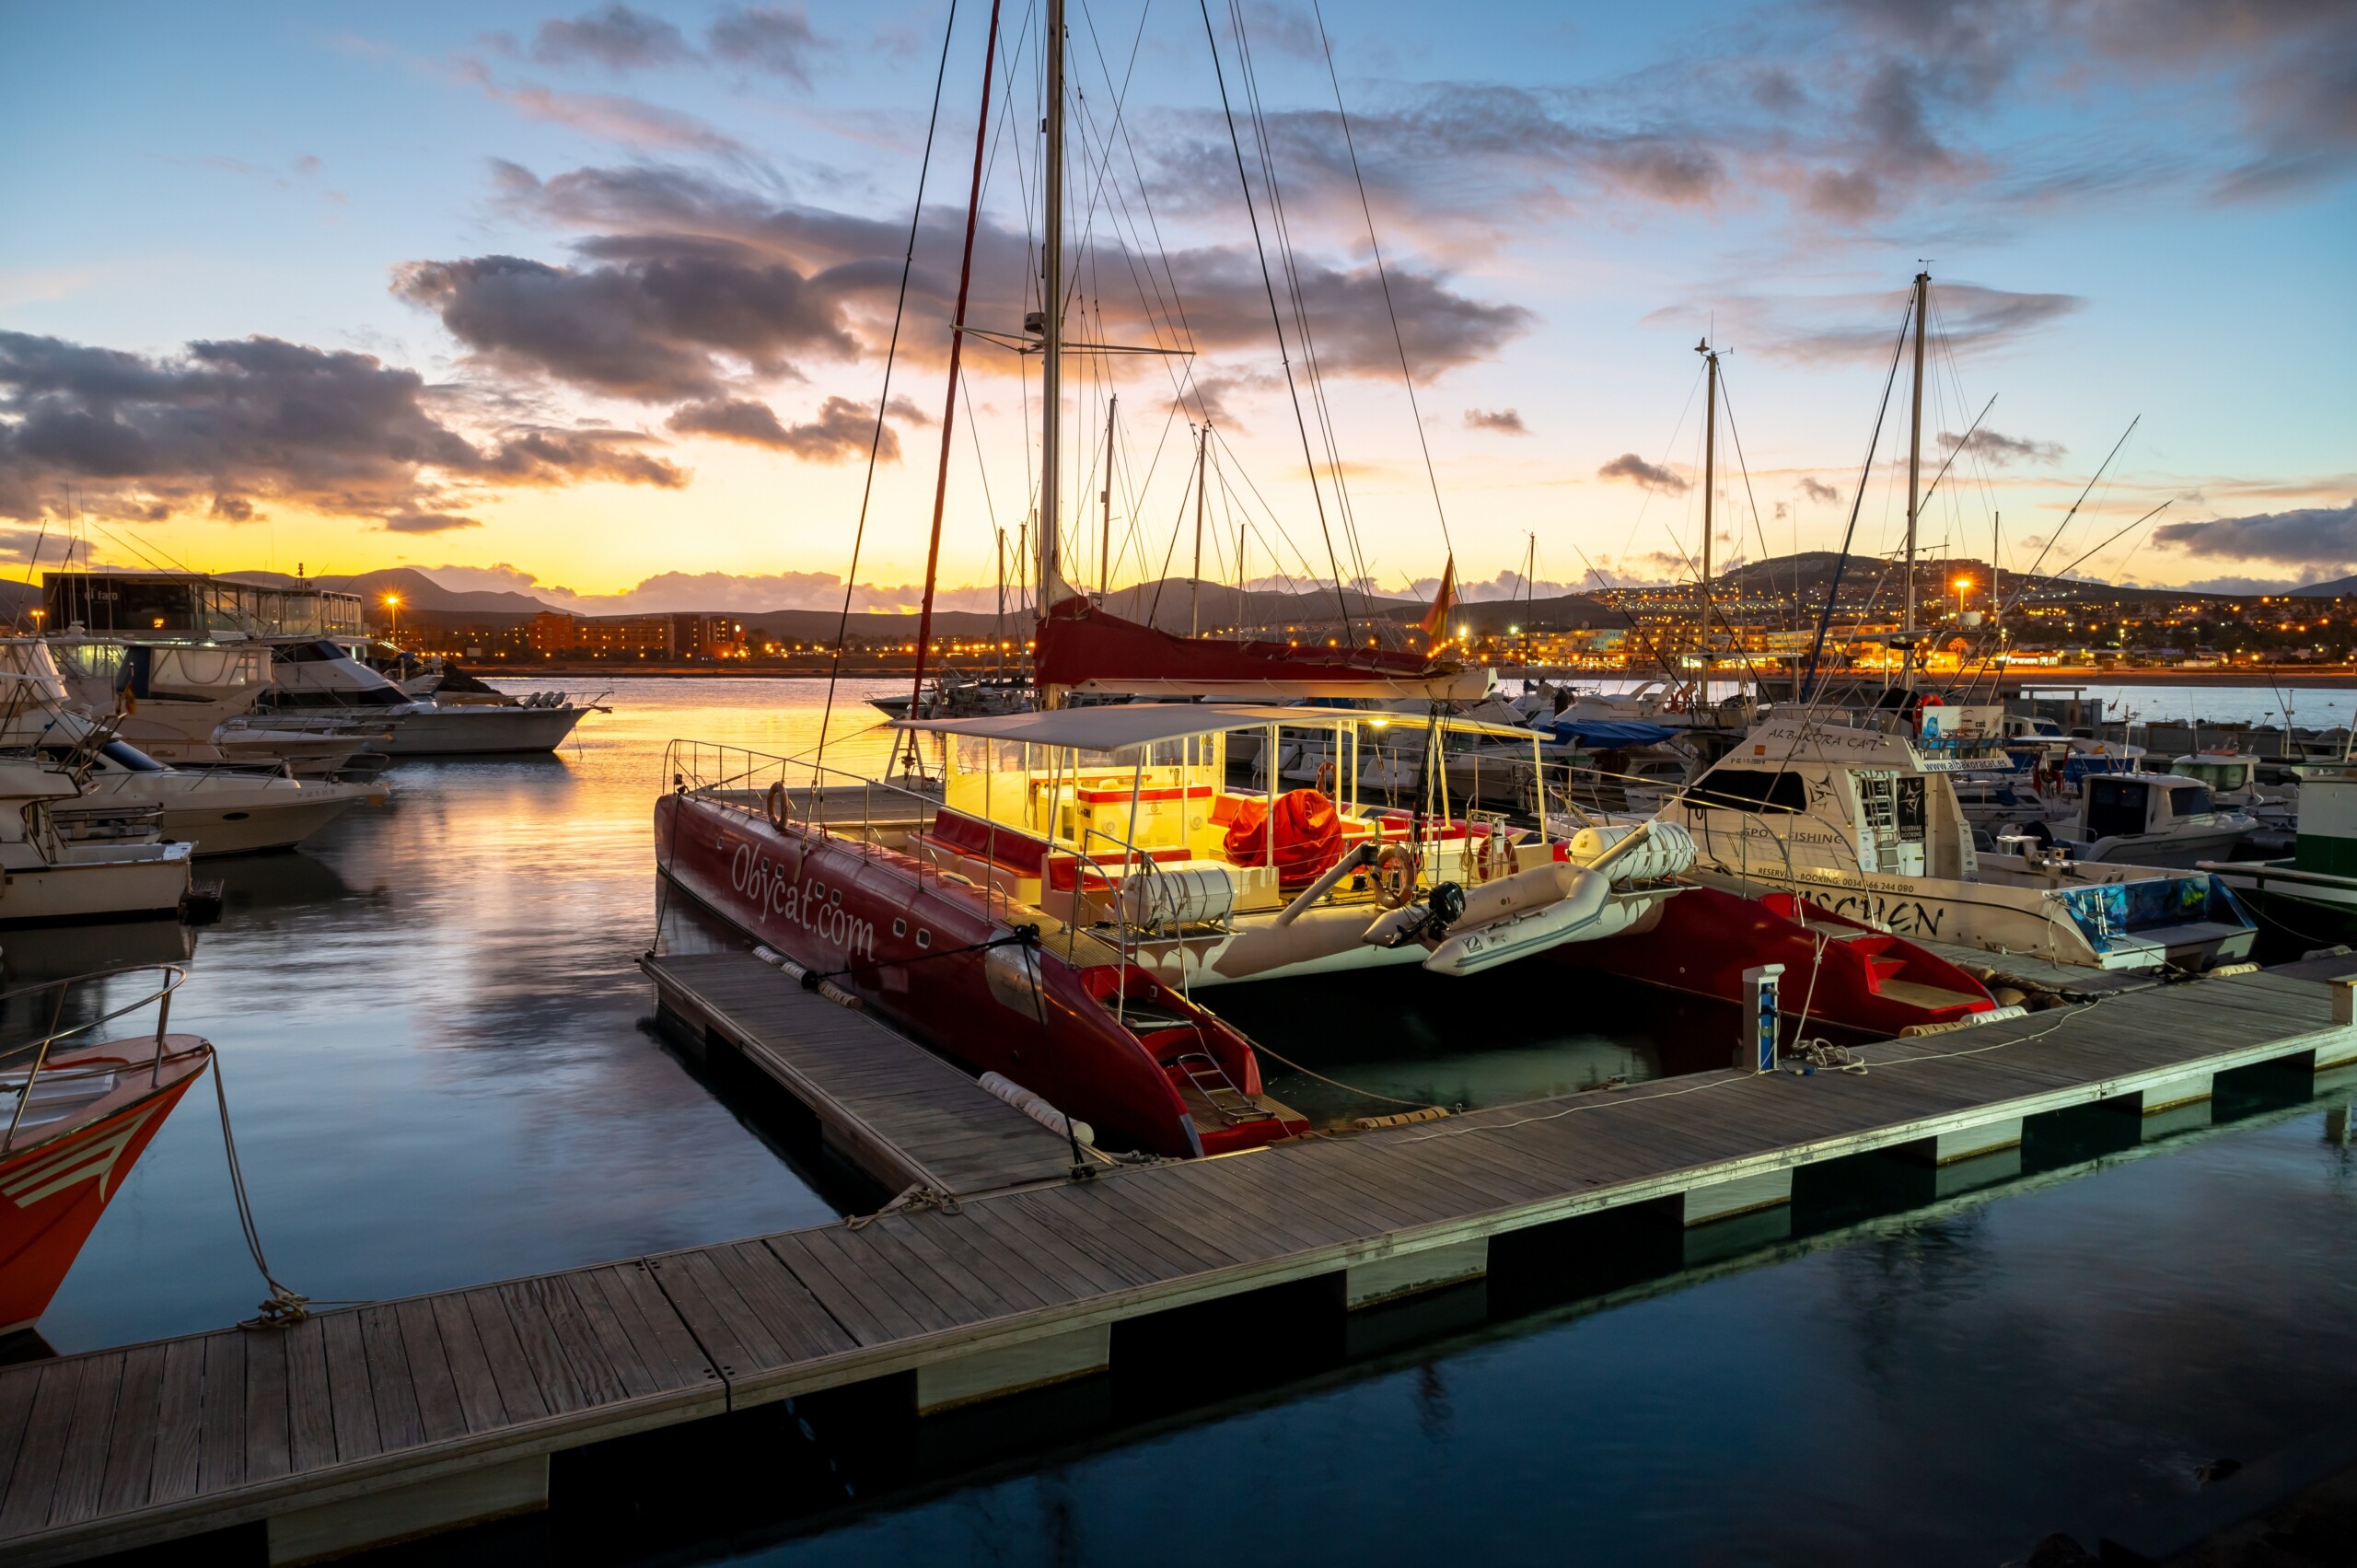 Fuerteventura, Hiszpania, 28 lutego 2023 r., Jachty i motorówki w zatoce oceanicznej Fuerteventura o zmierzchu po zachodzie słońca, hotele na wzgórzu w oddali, licencja: shutterstock/By CinemaPhoto